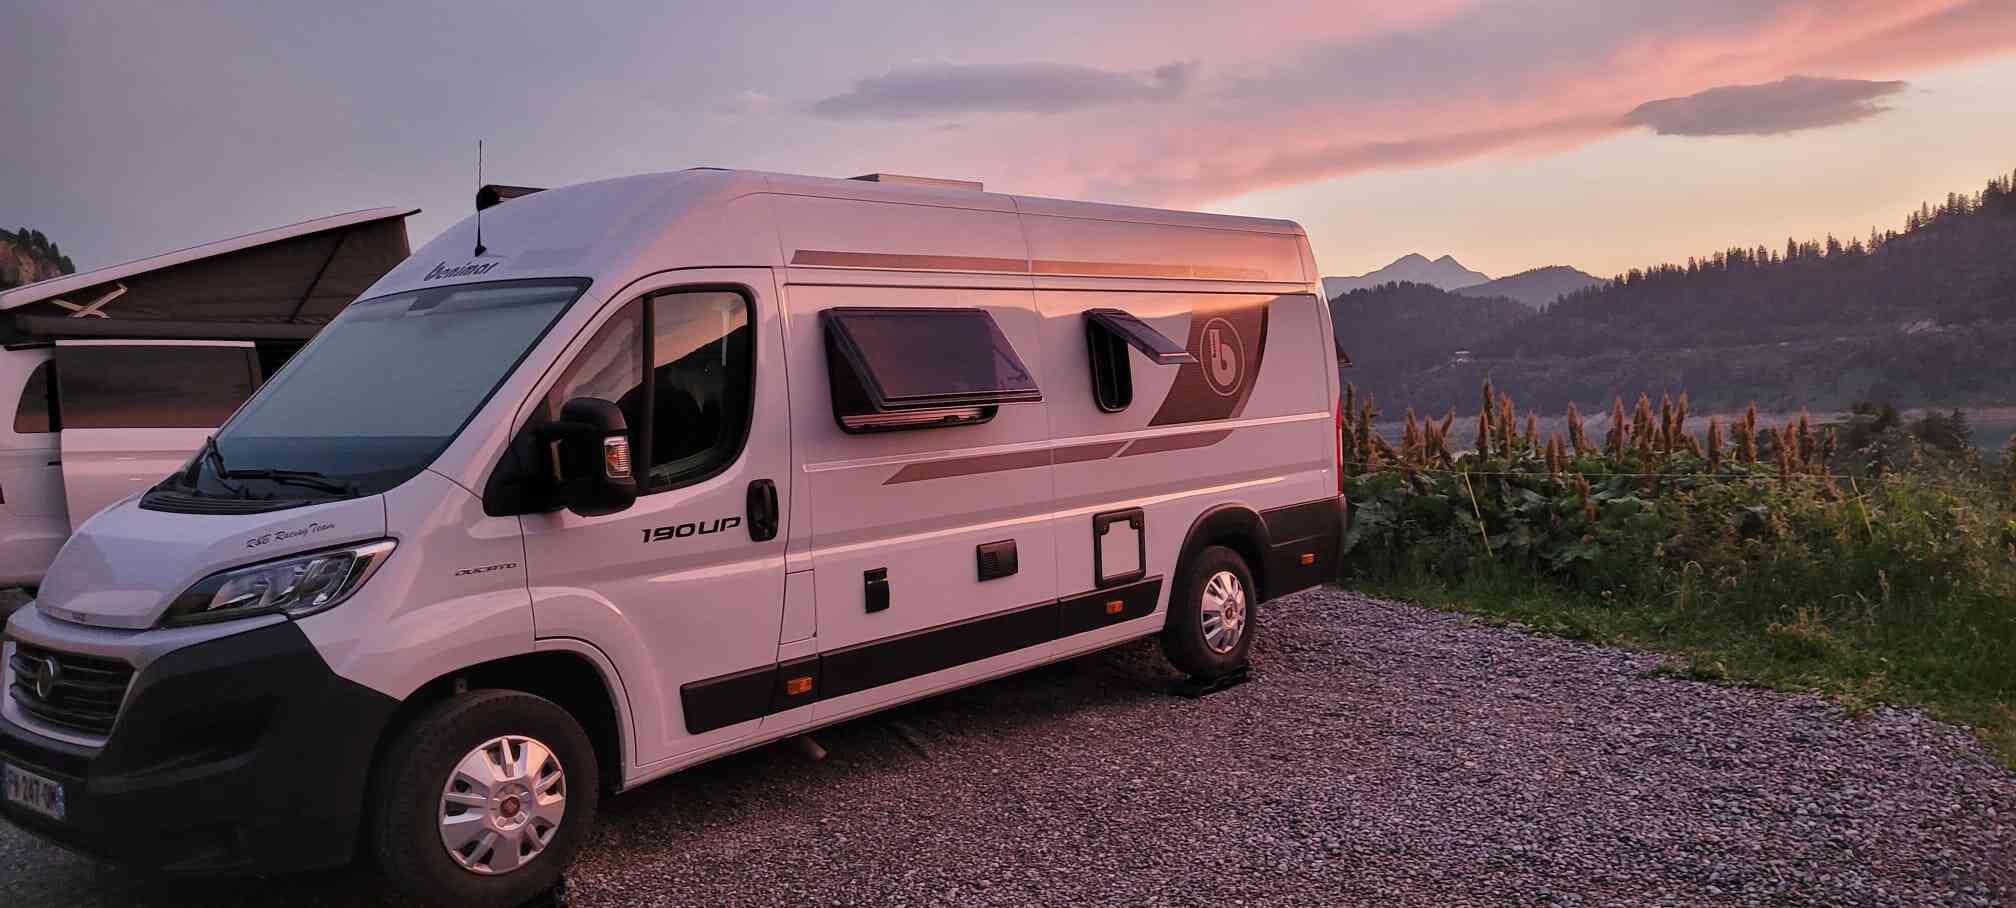 camping-car BENIMAR 190 UP  extérieur / latéral gauche